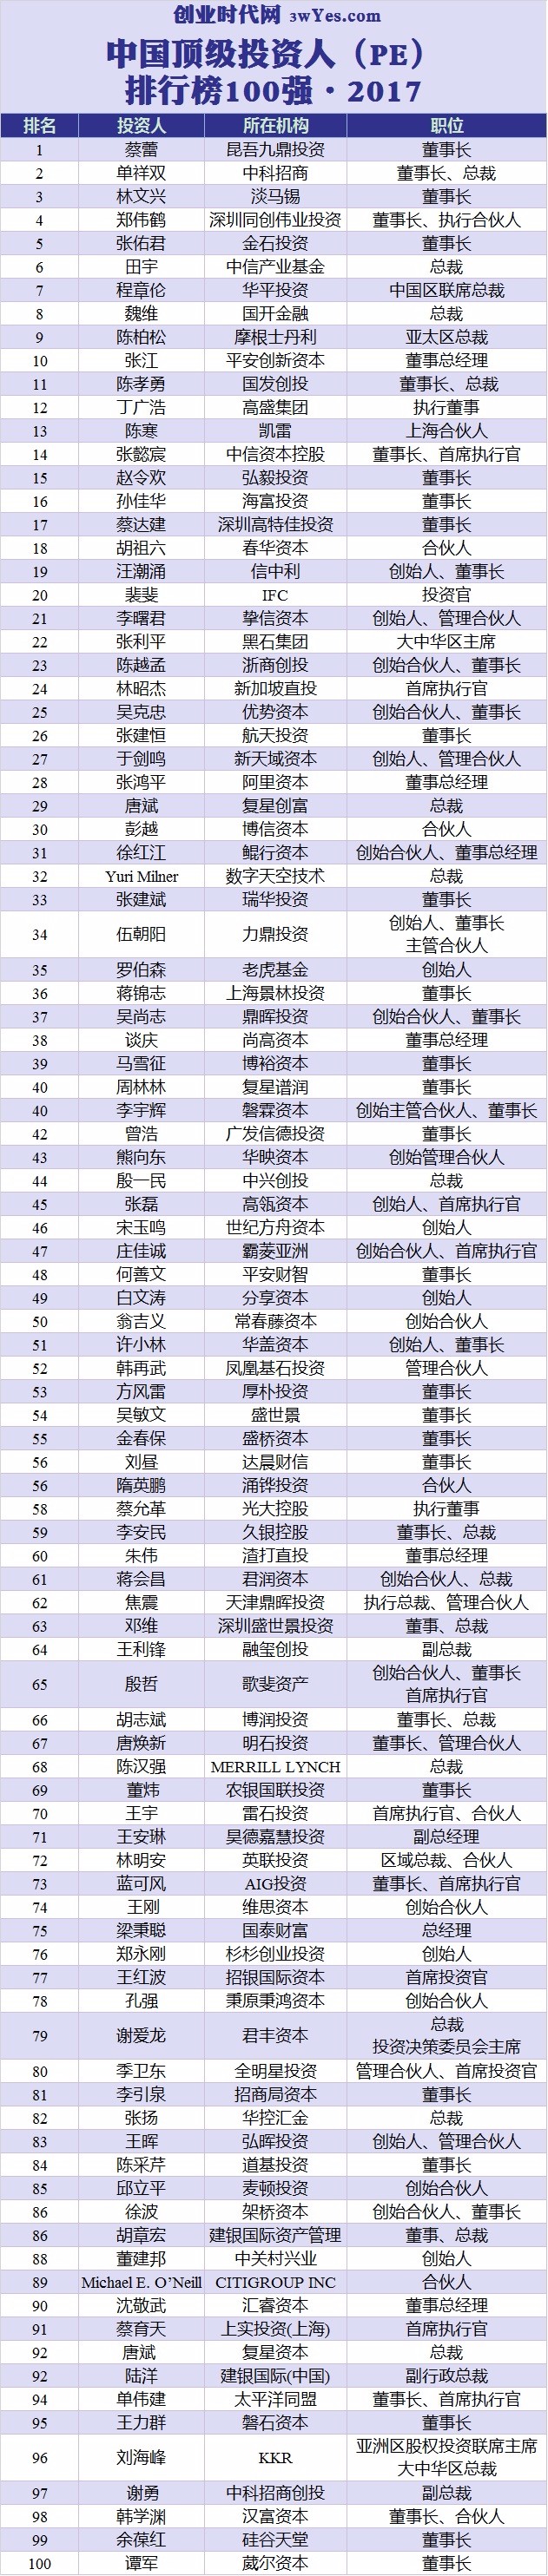 高端投资排行_2017年中国顶级投资人排行榜TOP50